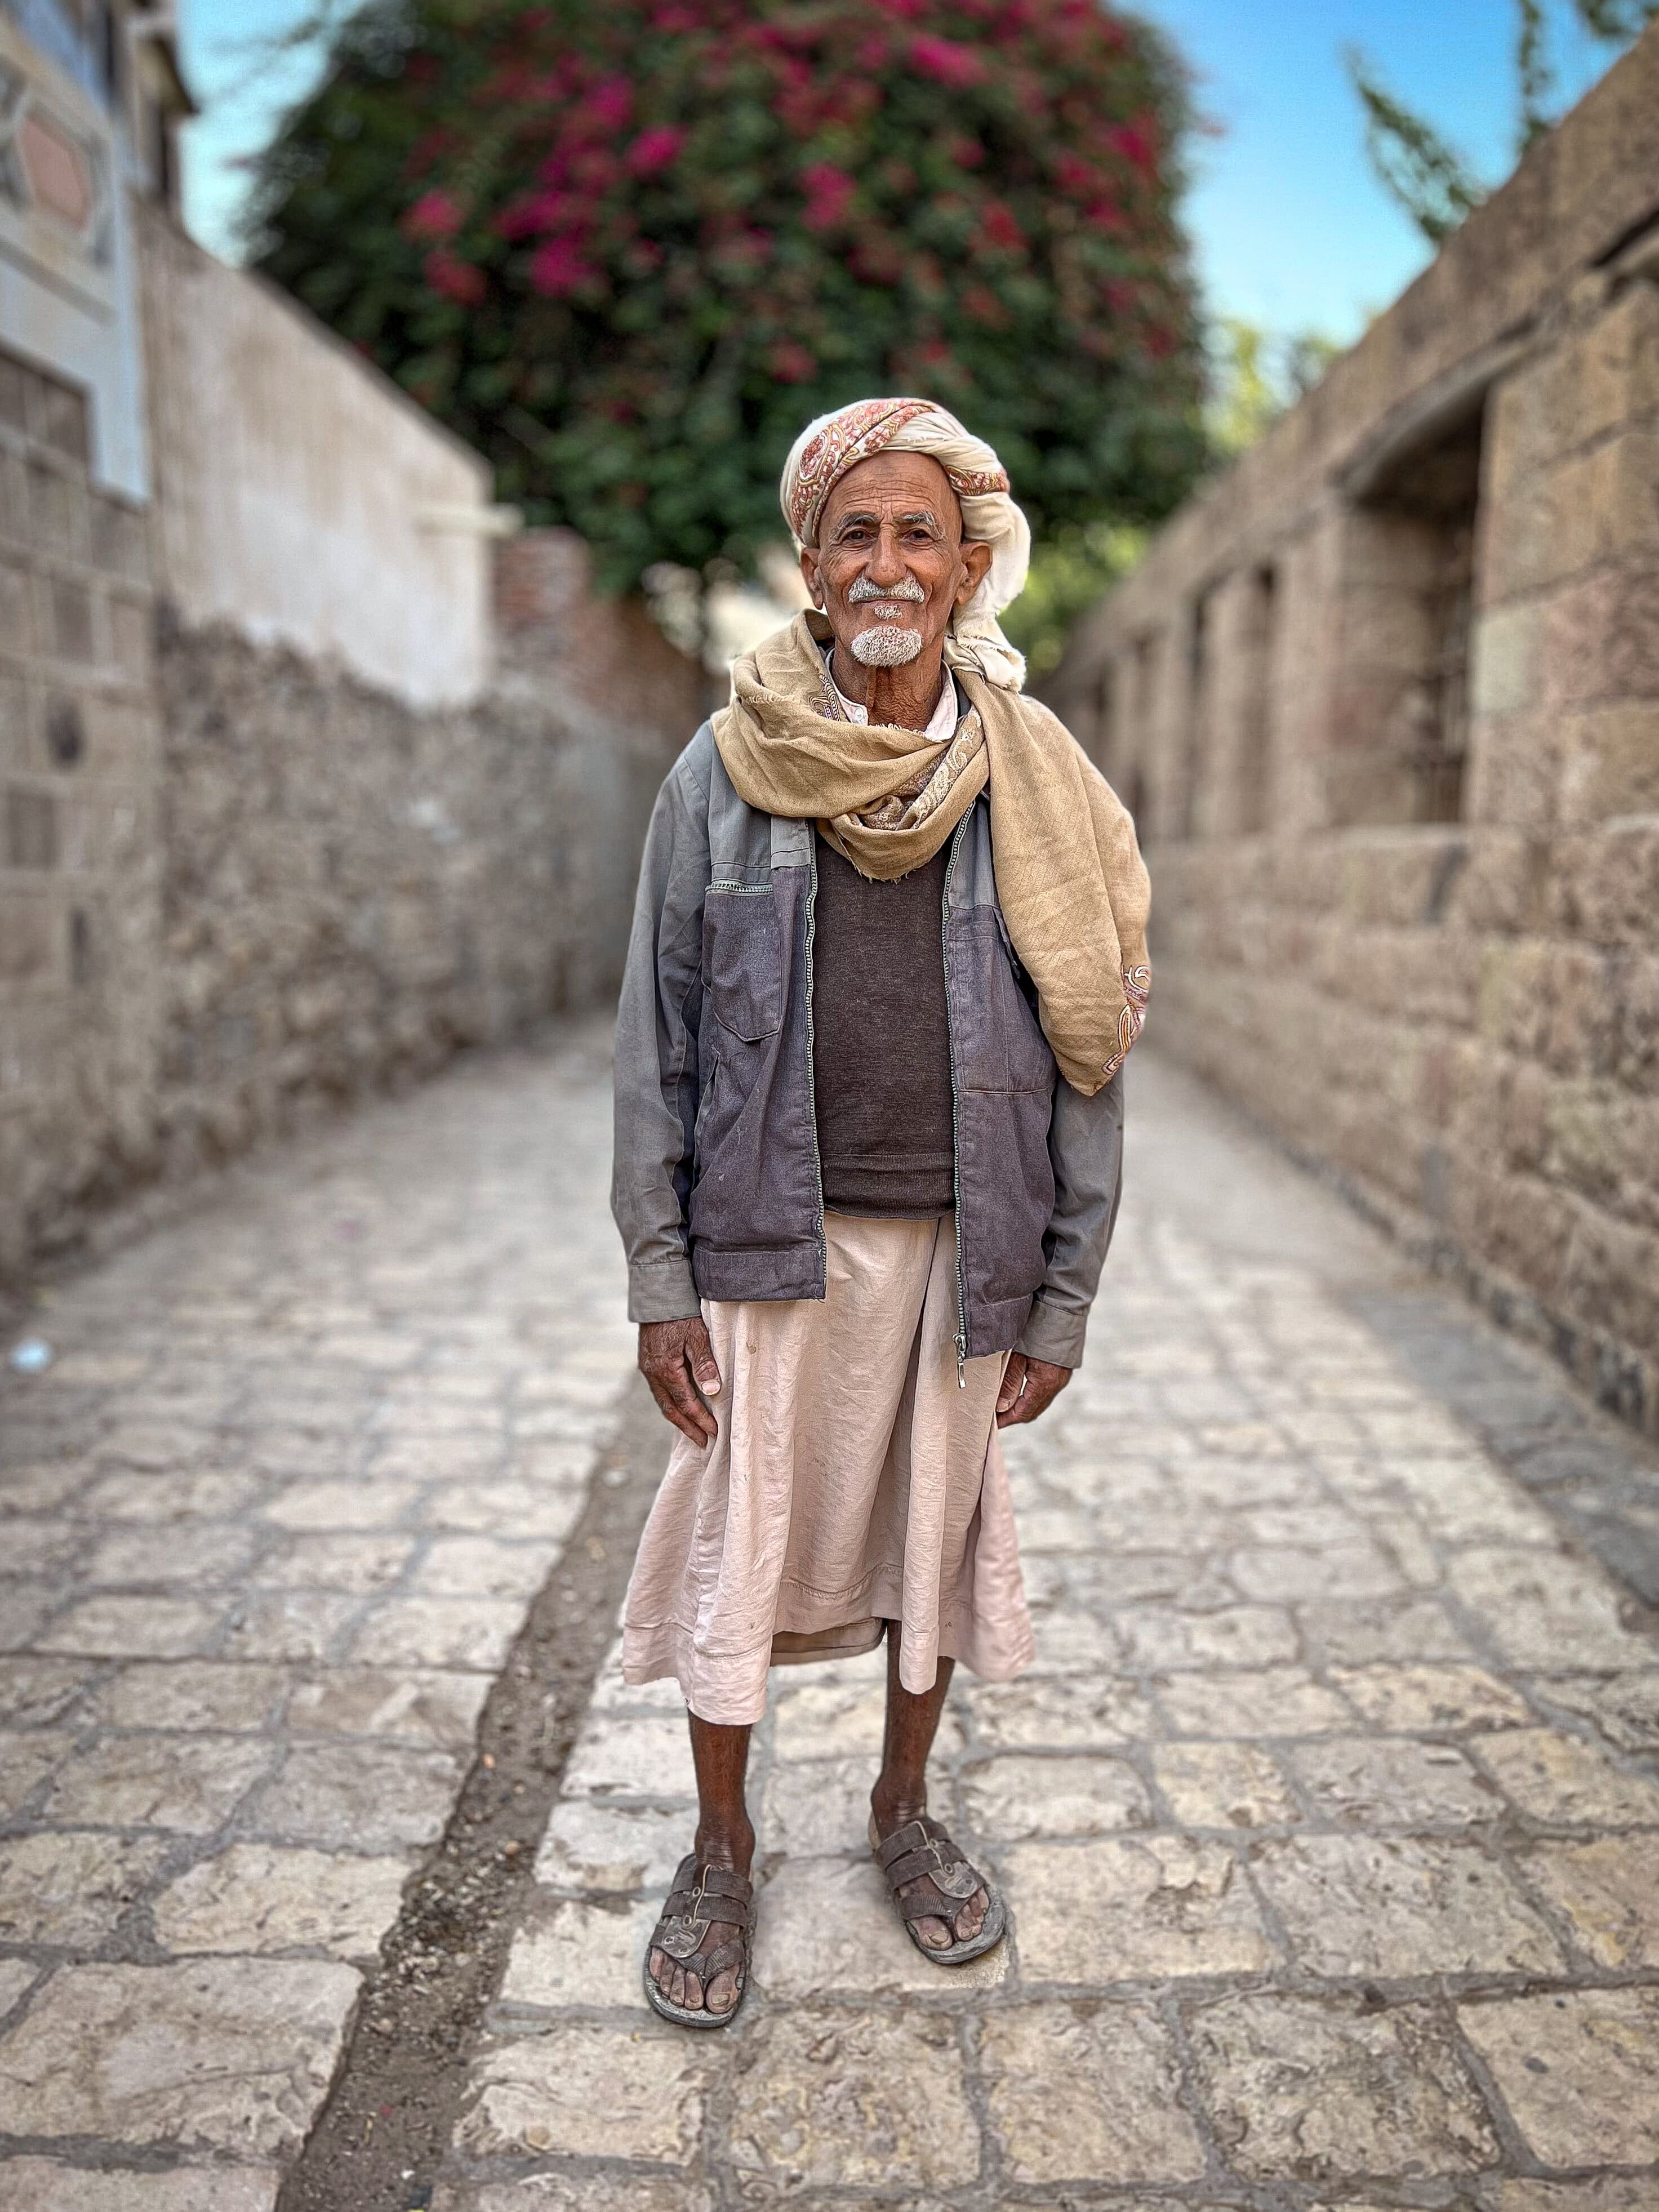 المسن اليمني عبدالله أمضى 60عام في ترميم أثار صنعاء القديمة- مصدر الصور فريق عمل الفيلم (2) (1).jpg